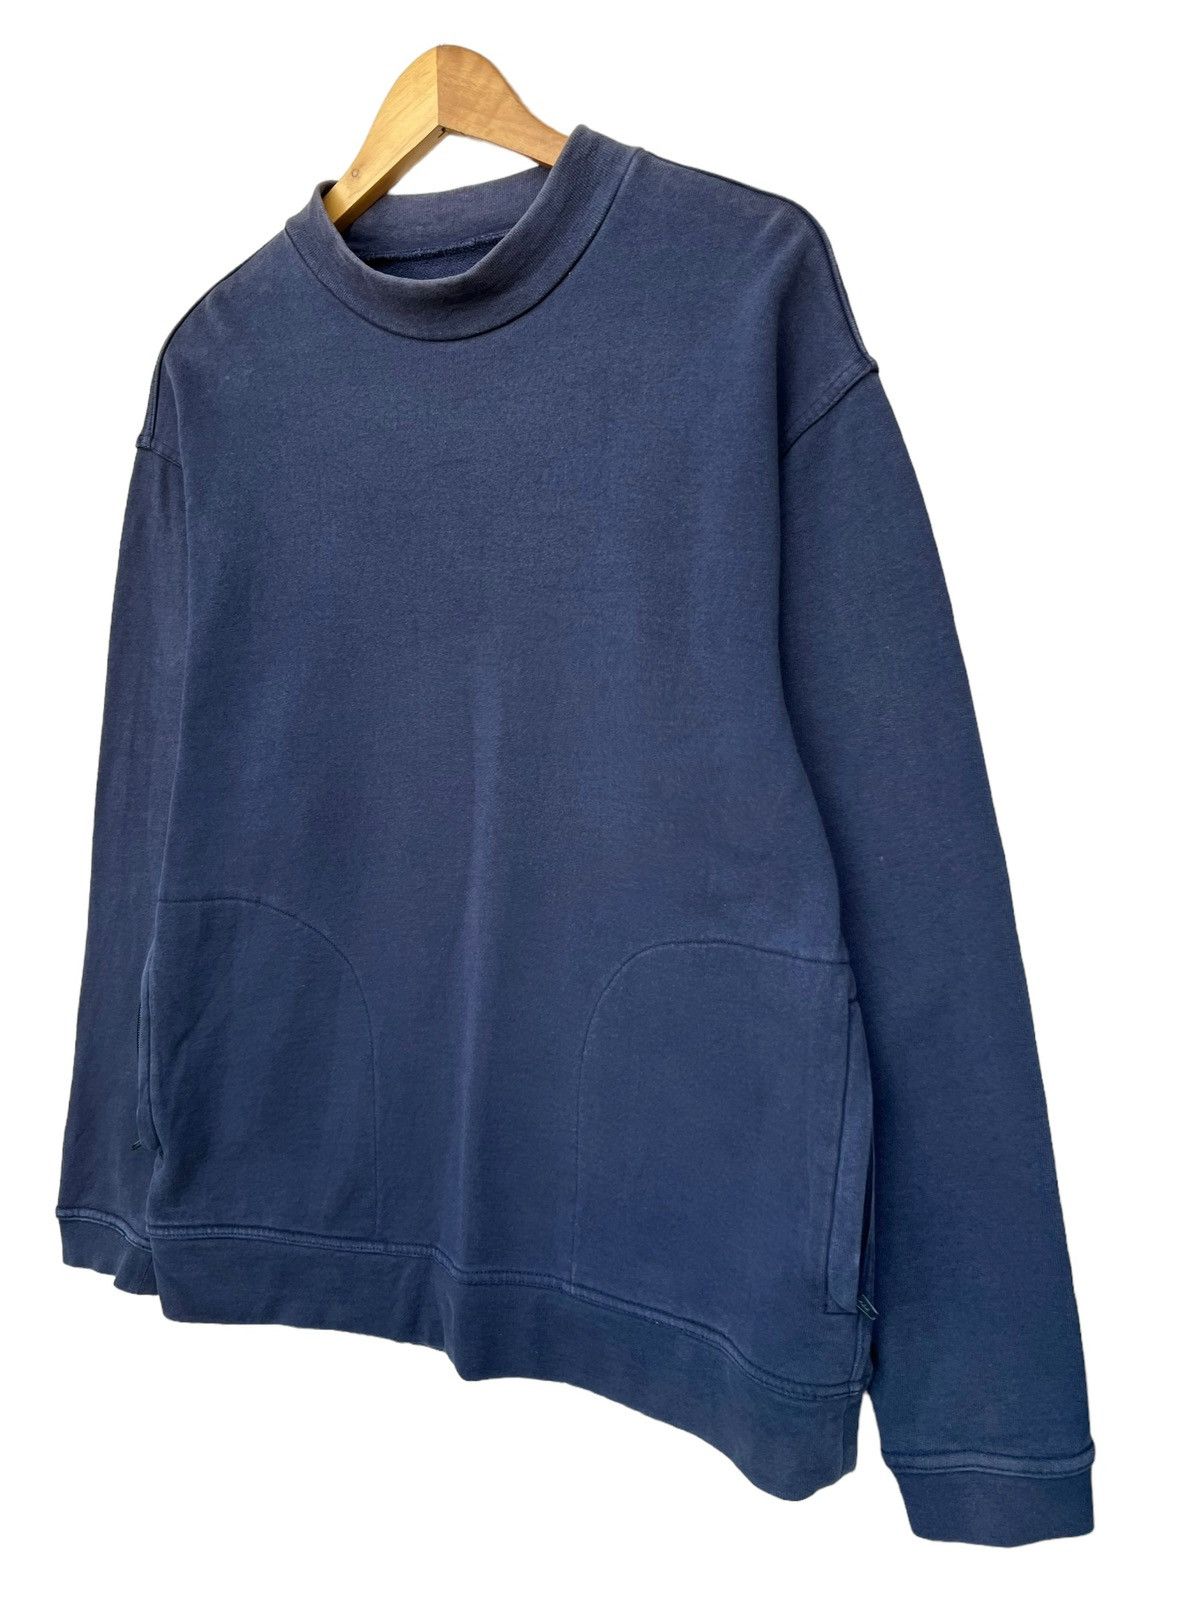 Vintage Beams Plus Japan Style Sweater Mock Neck Sweatshirt - 3